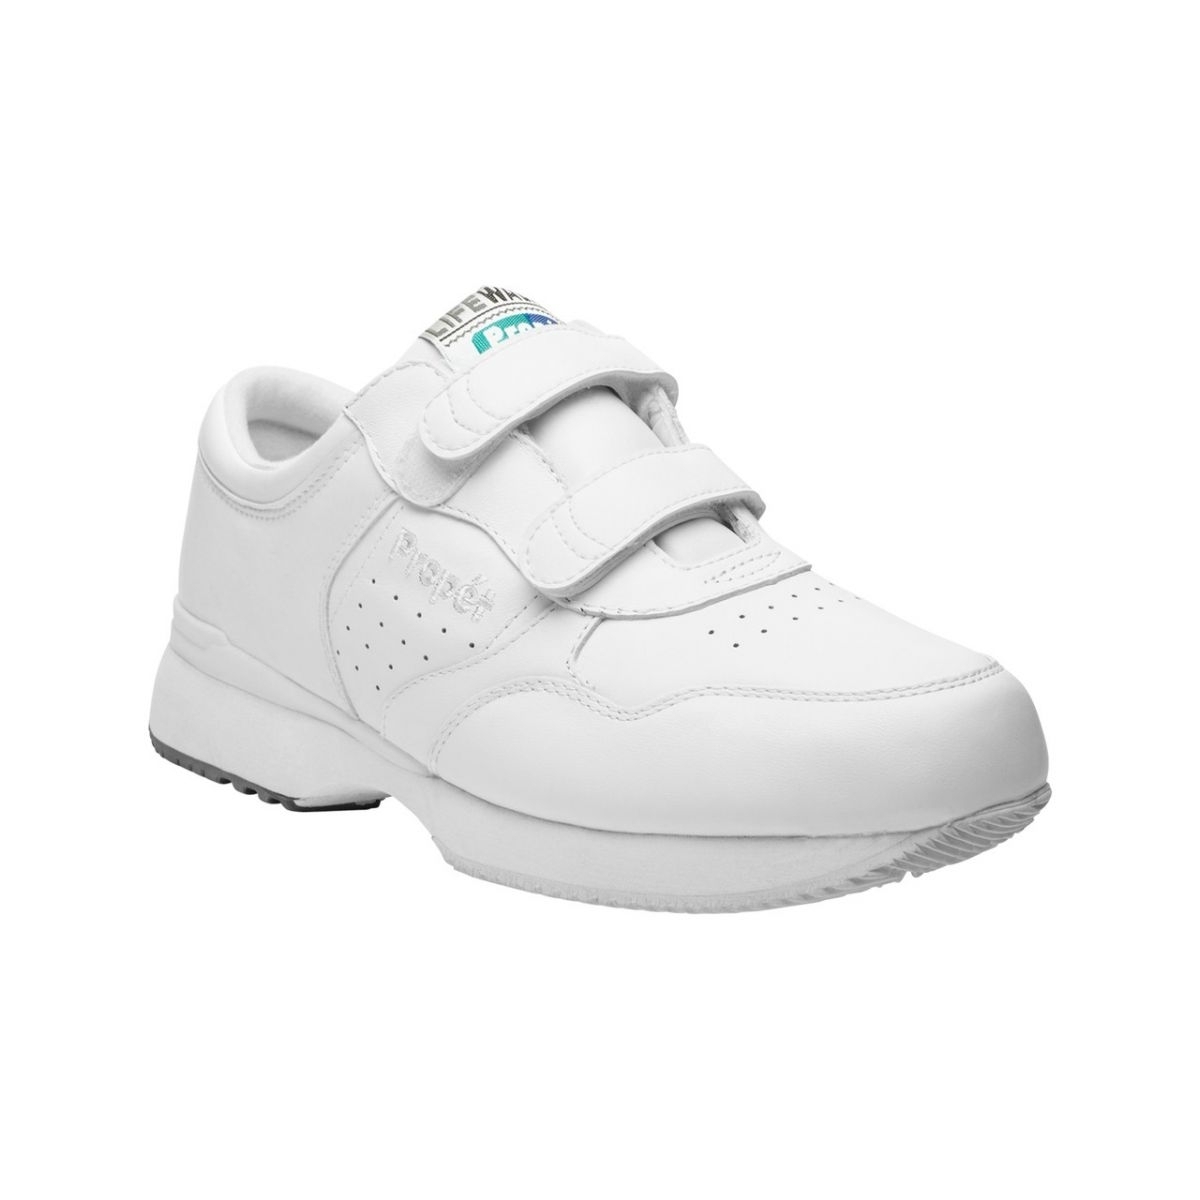 Propet Men's Life Walker Strap Shoe White - M3705WHT WHITE - WHITE, 18 XX-Wide